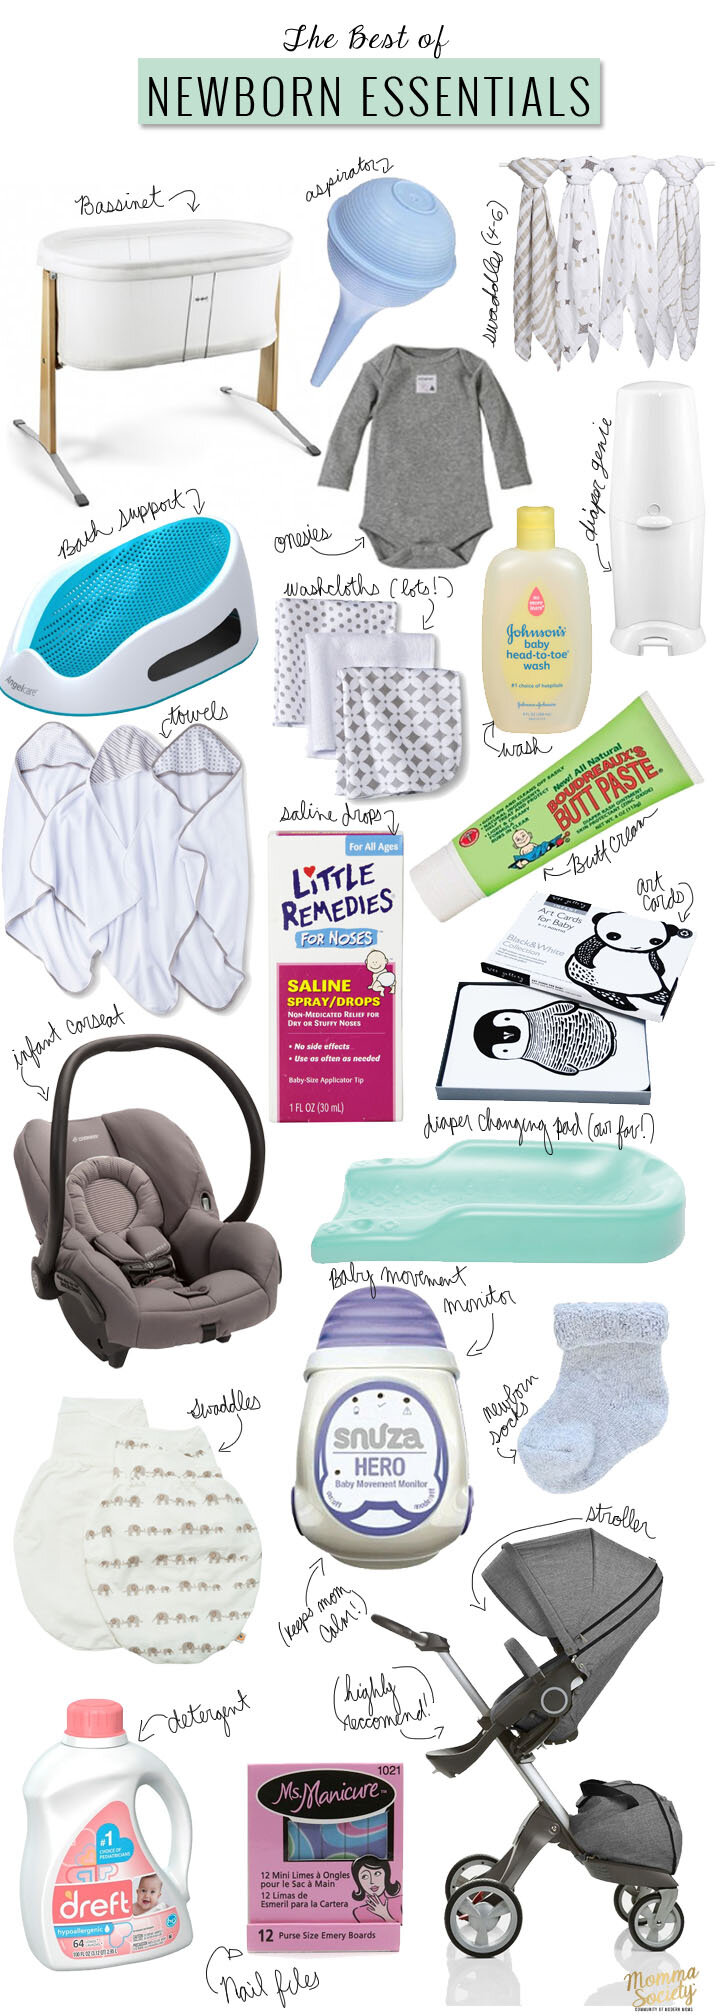 12 Days of Baby Stuff: Breastfeeding Essentials